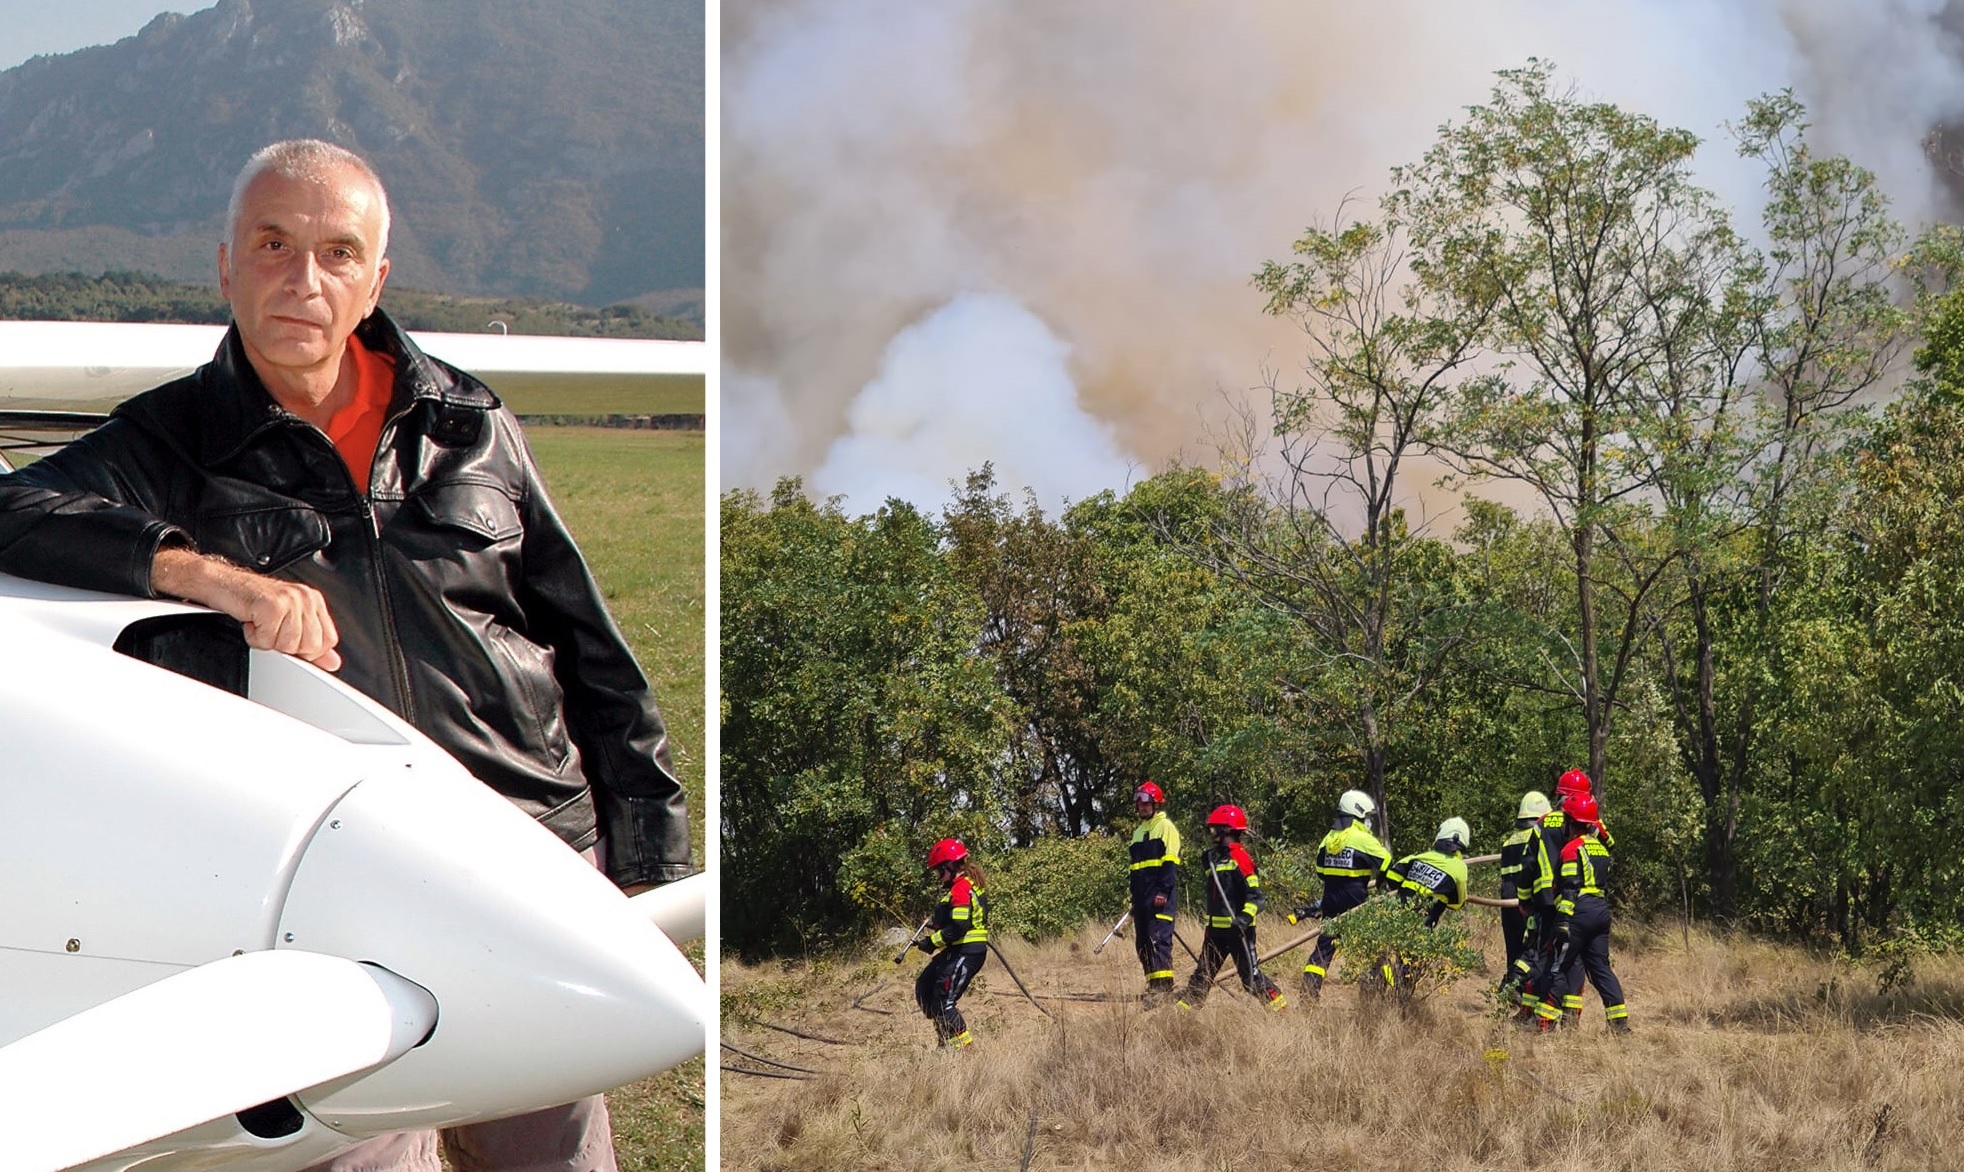 Velikodušna gesta: Ivo Boscarol bo gasilce, ki se borijo z ognjem, podprl z donacijo